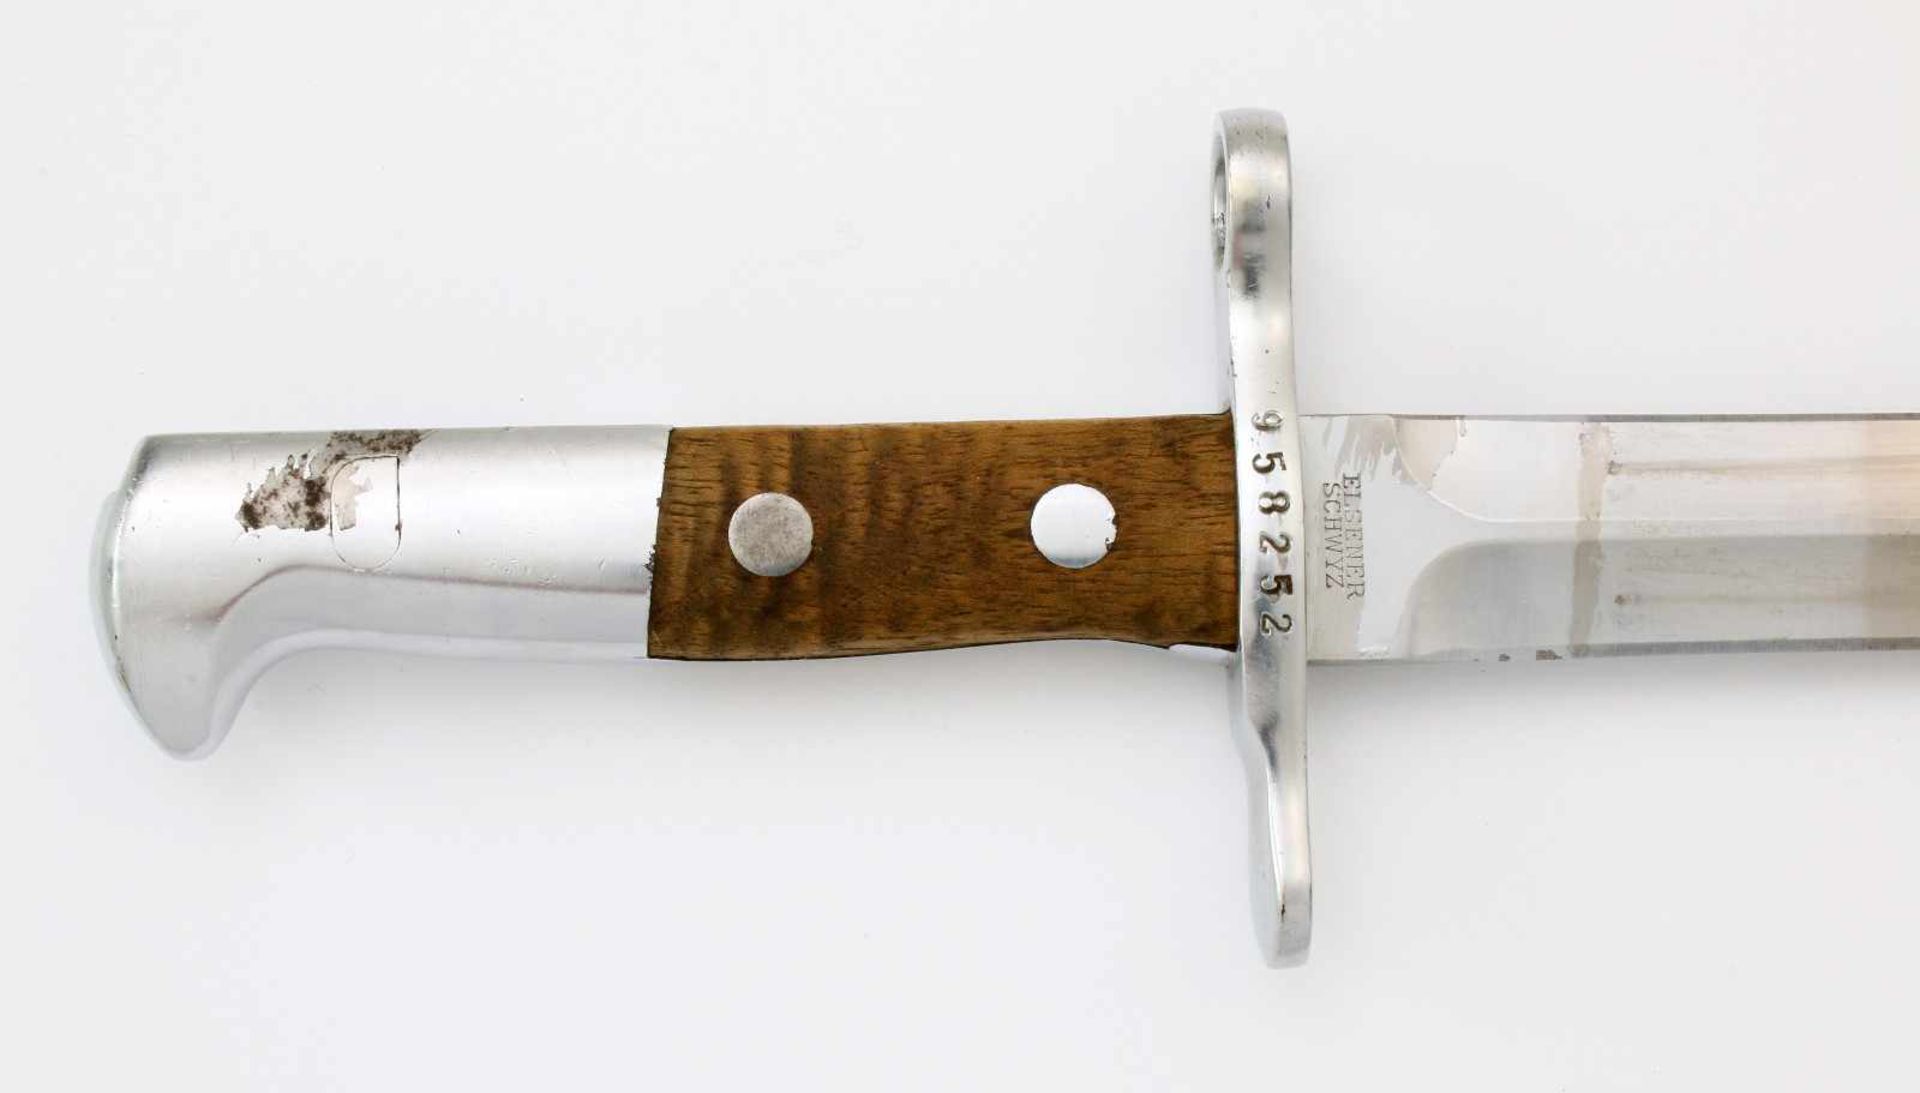 Schweiz - Dolchbajonett Schmidt Rubin M1918/1931Zweischneidige, gegratete Dolchklinge, Herst. " - Bild 3 aus 5